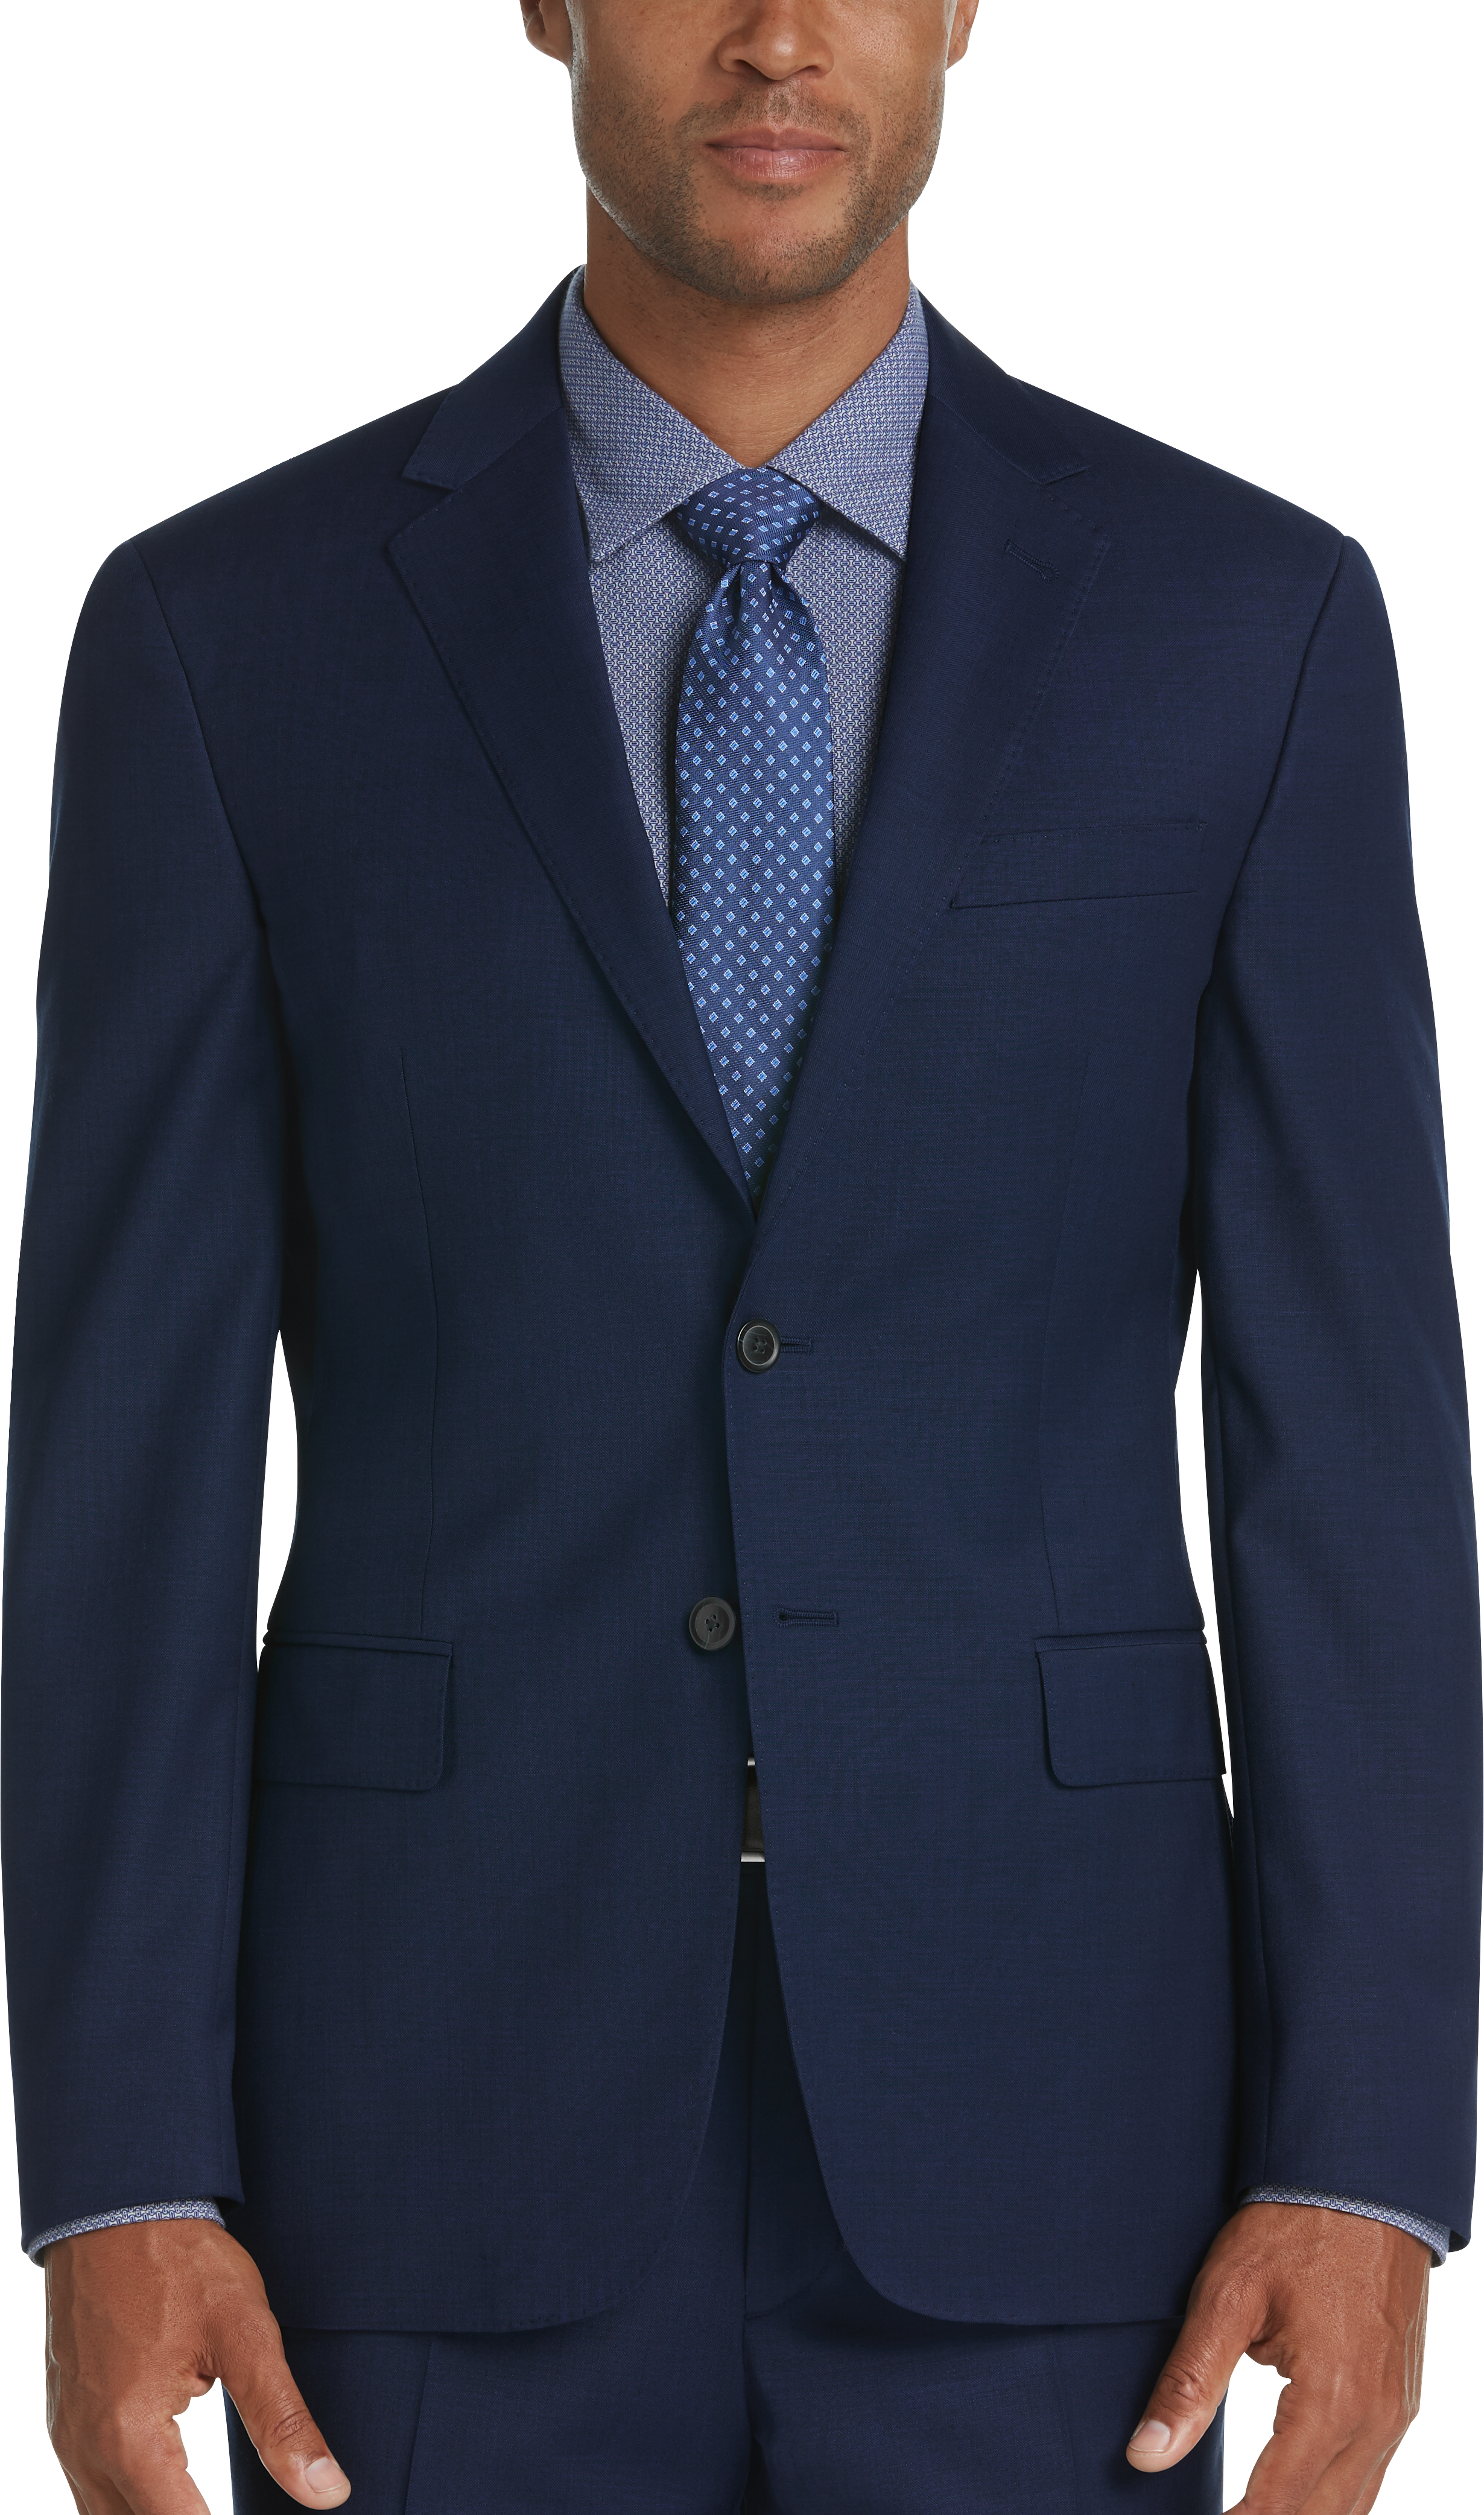 JOE Joseph Abboud Brrr° Blue Slim Fit Suit - Men's Suits | Men's Wearhouse